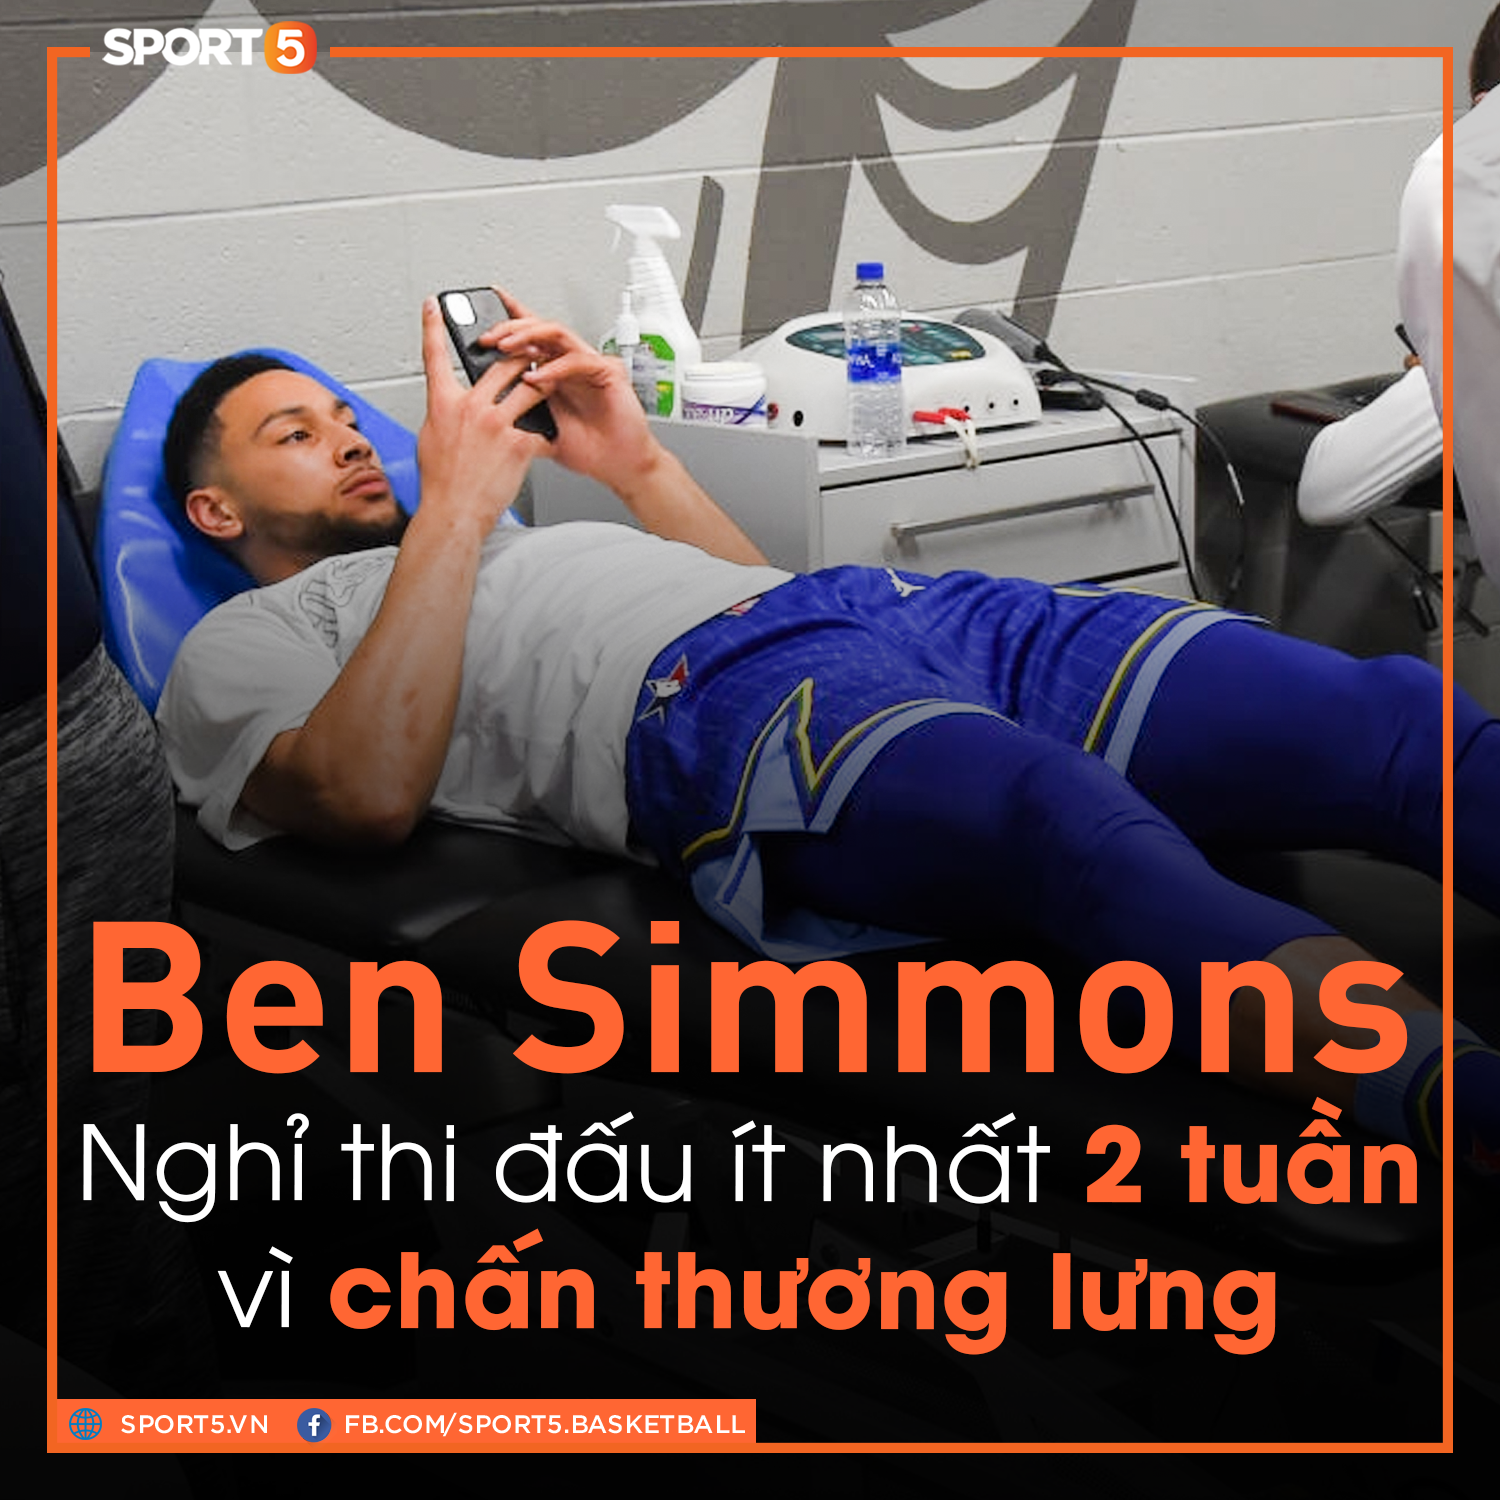 Ben Simmons nghỉ thi đấu 2 tuần vì chấn thương lưng, mối nguy lớn cho sự nghiệp ở Philadelphia 76ers? - Ảnh 1.